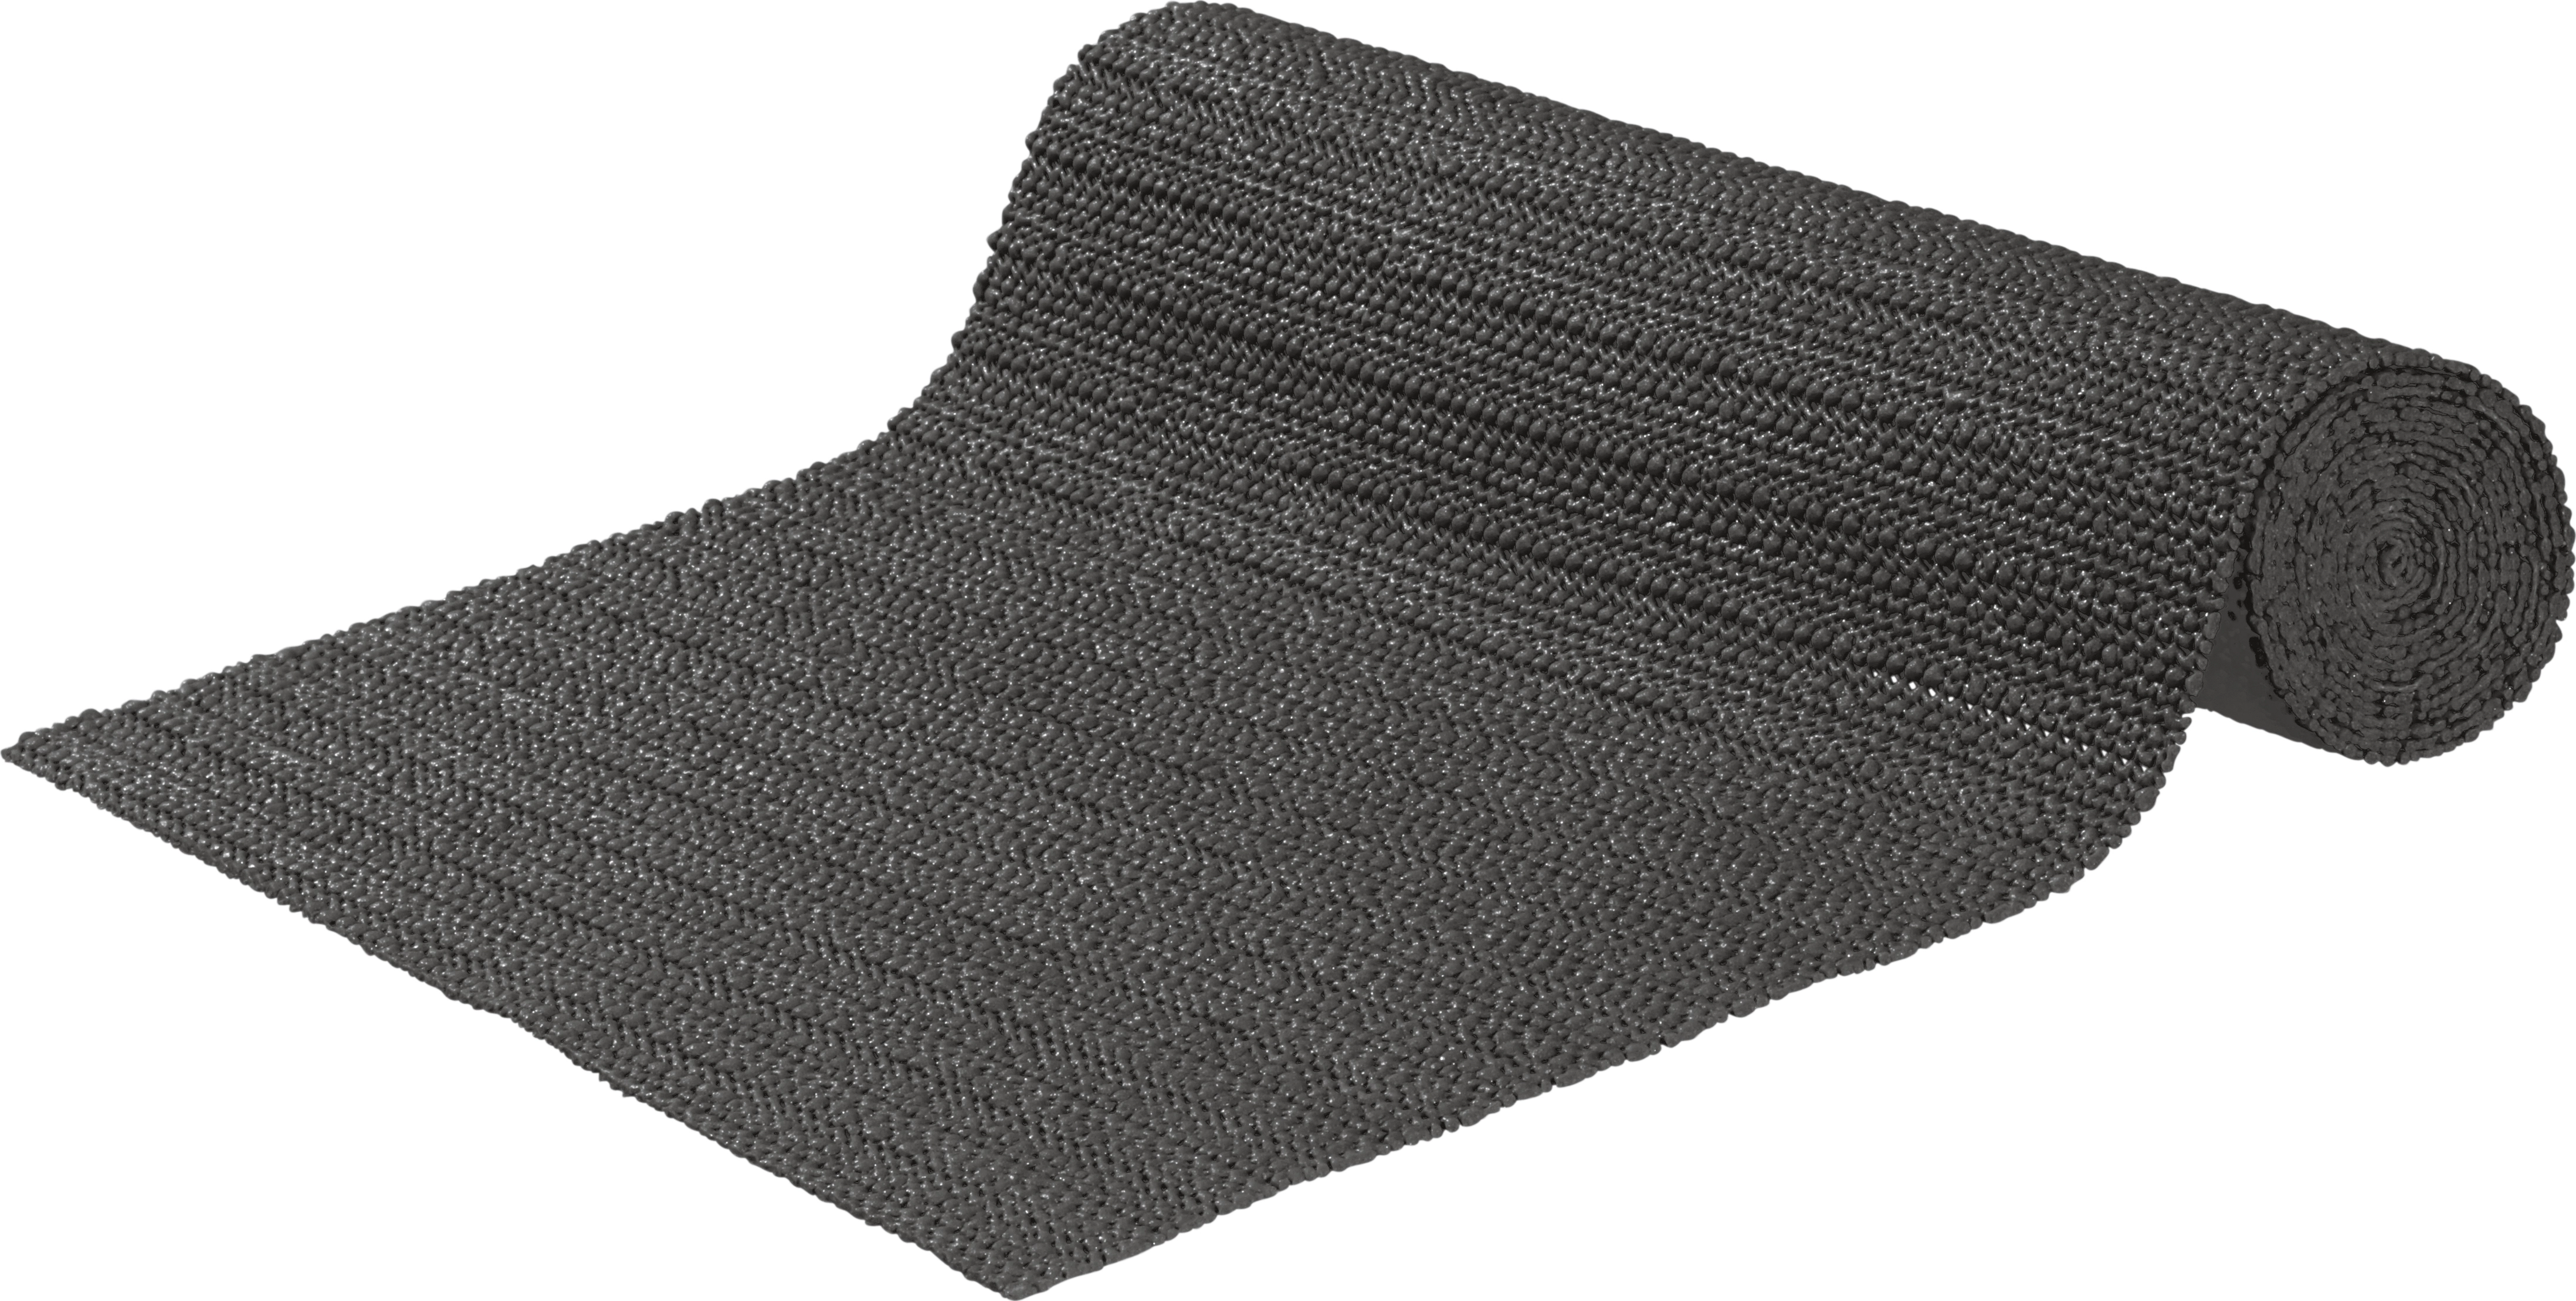 Hinrichs 20x Teppichgreifer - Teppichstopper selbstklebend ideal als  Antirutschmatte für Teppich (wp, Teppichunterlagen, Haushalt & Zubehör